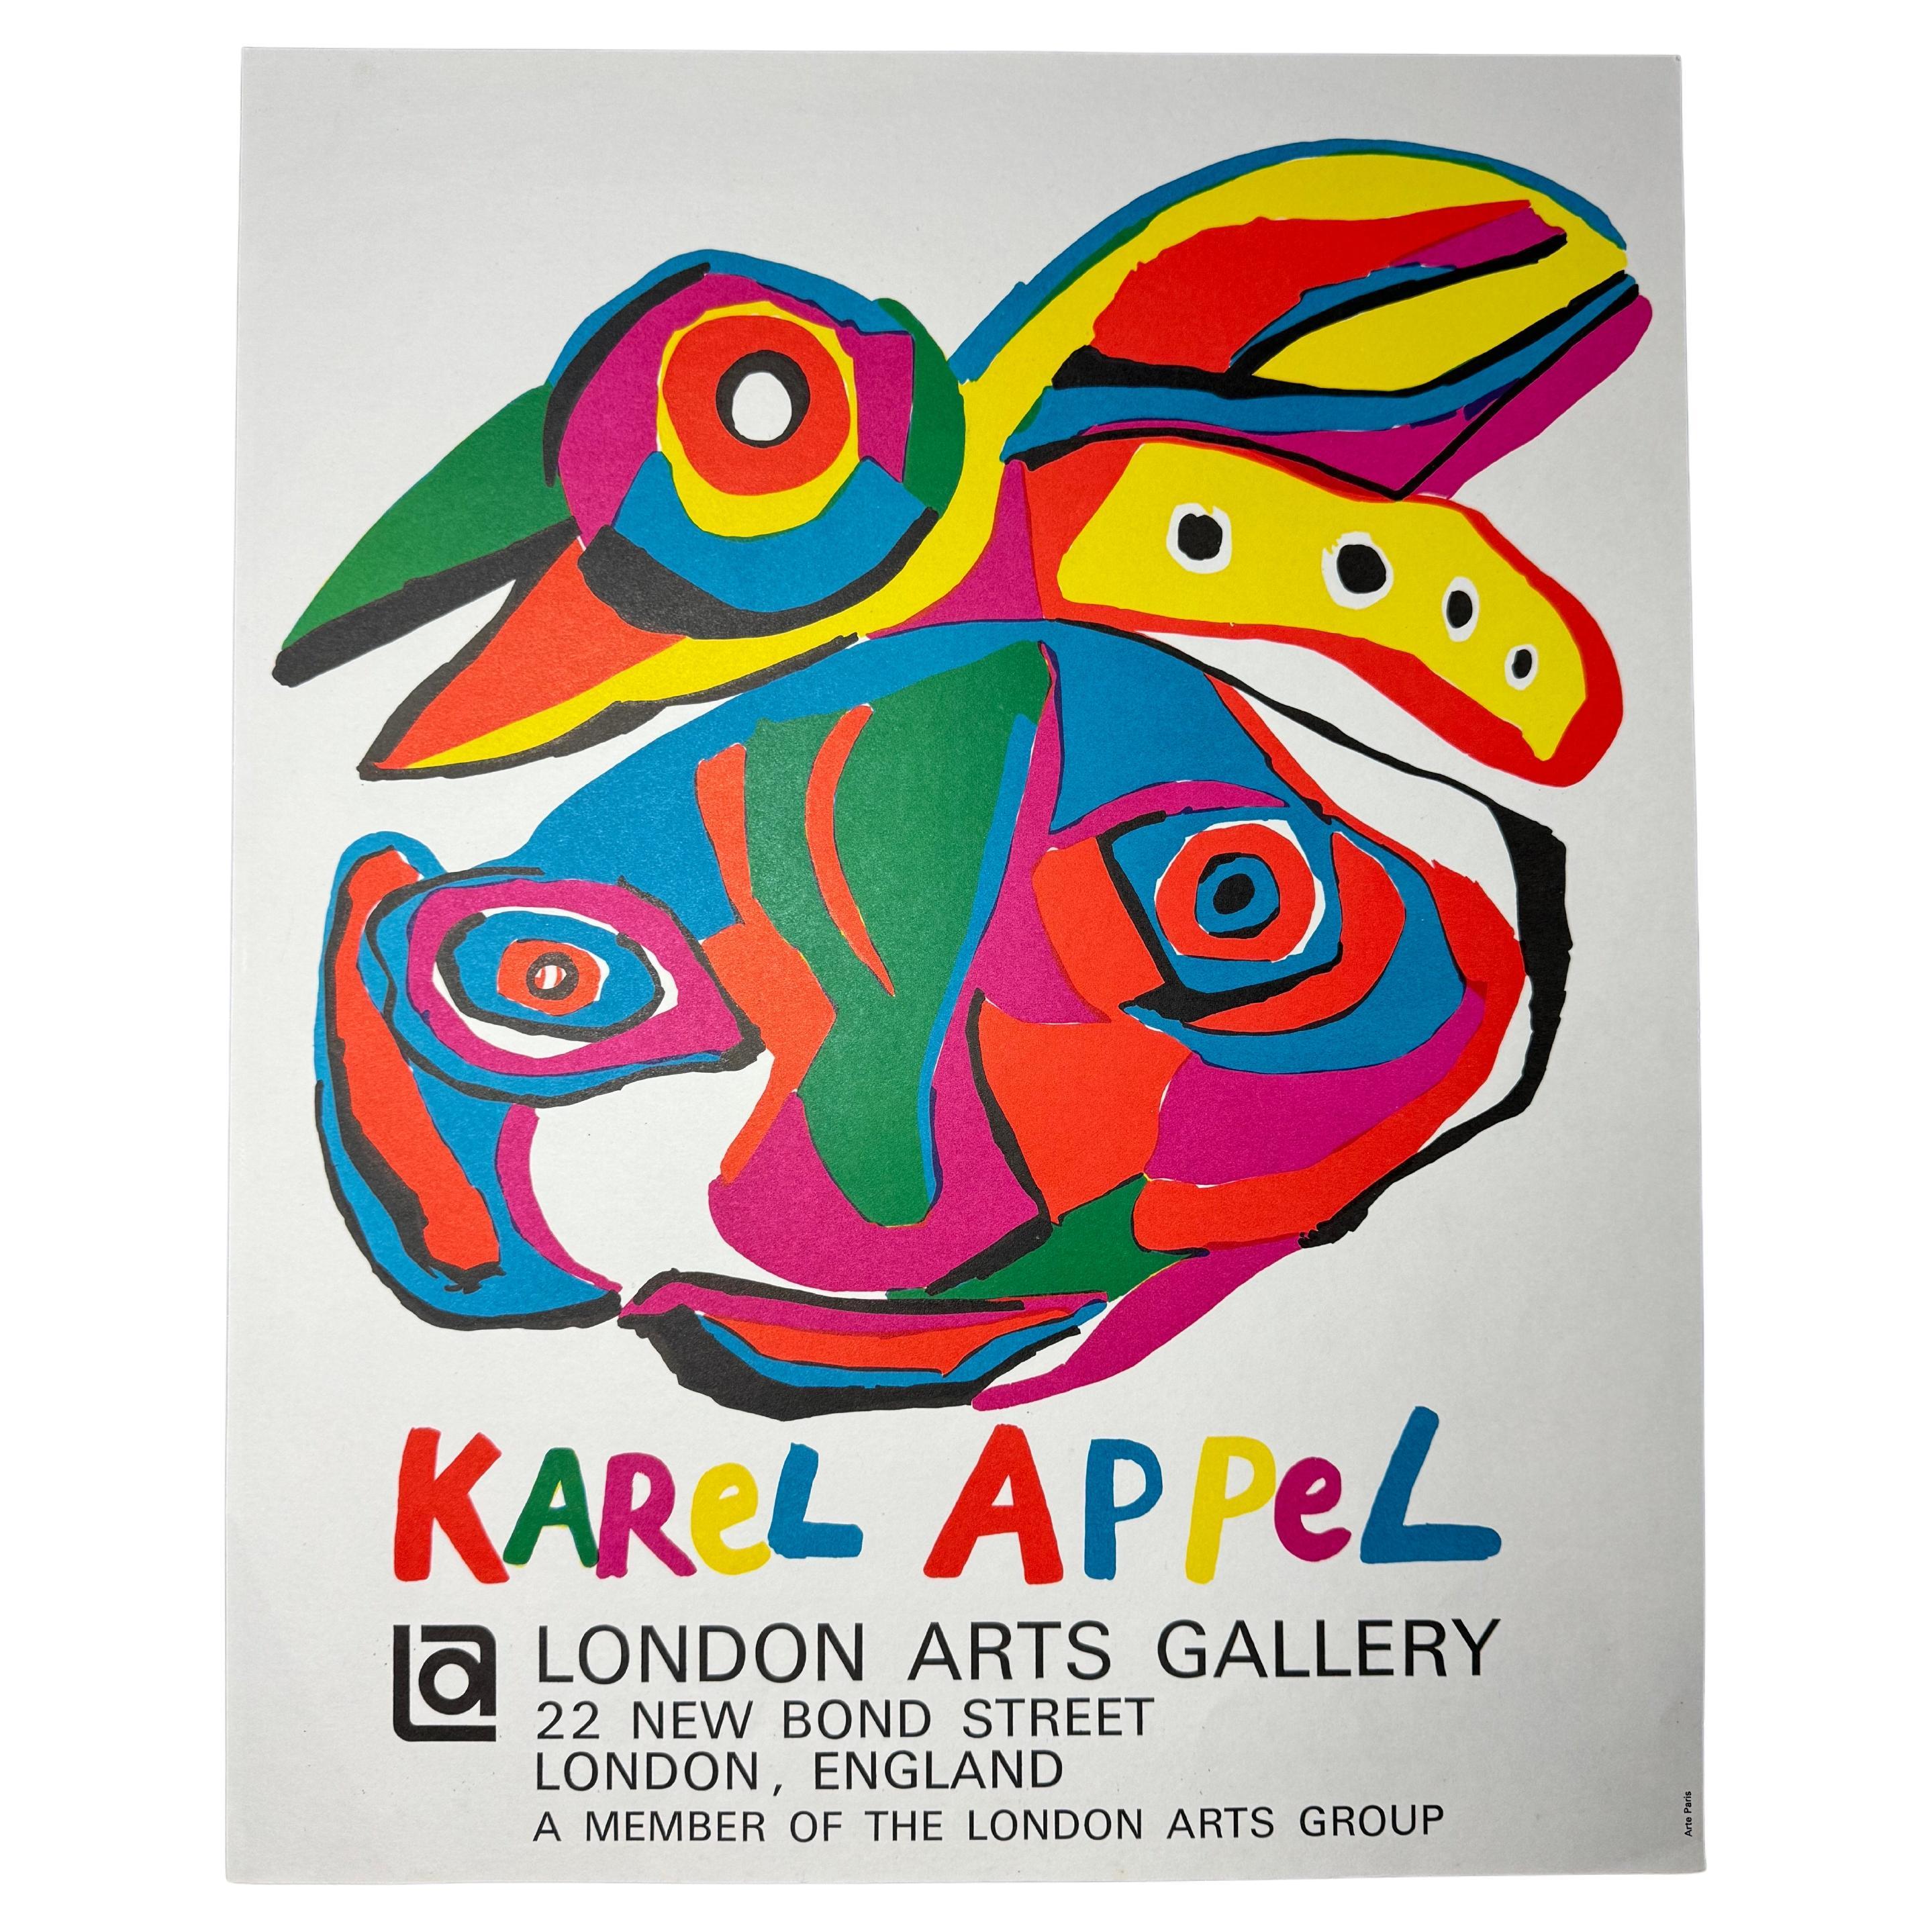 Vintage Karel Appel "London Arts Gallery" Exhibition Print 